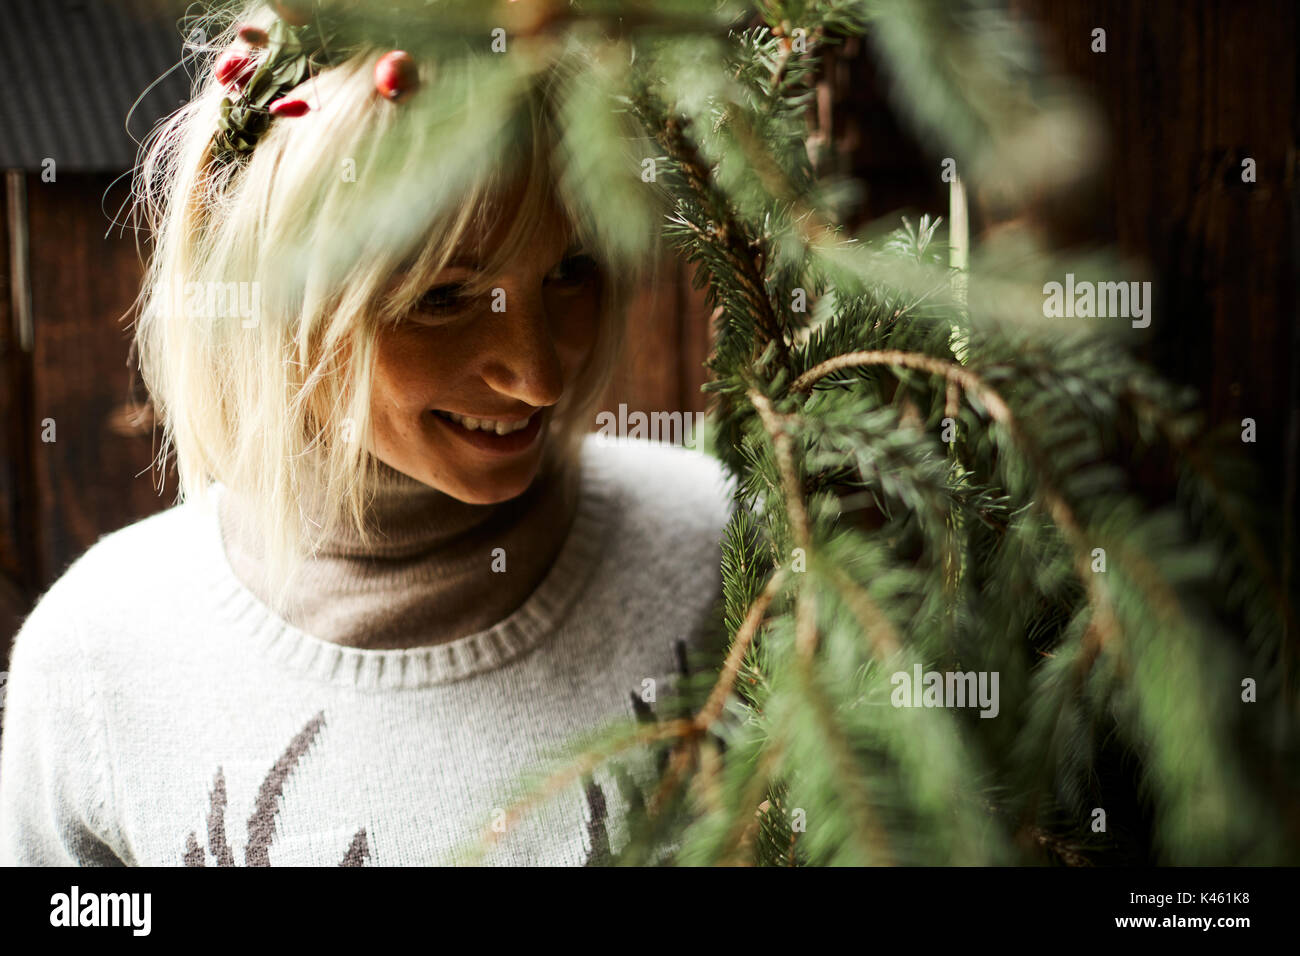 Femme blonde, coiffe, Garland avec églantier, les rameaux des arbres à feuillage persistant pour la décoration, portrait Banque D'Images